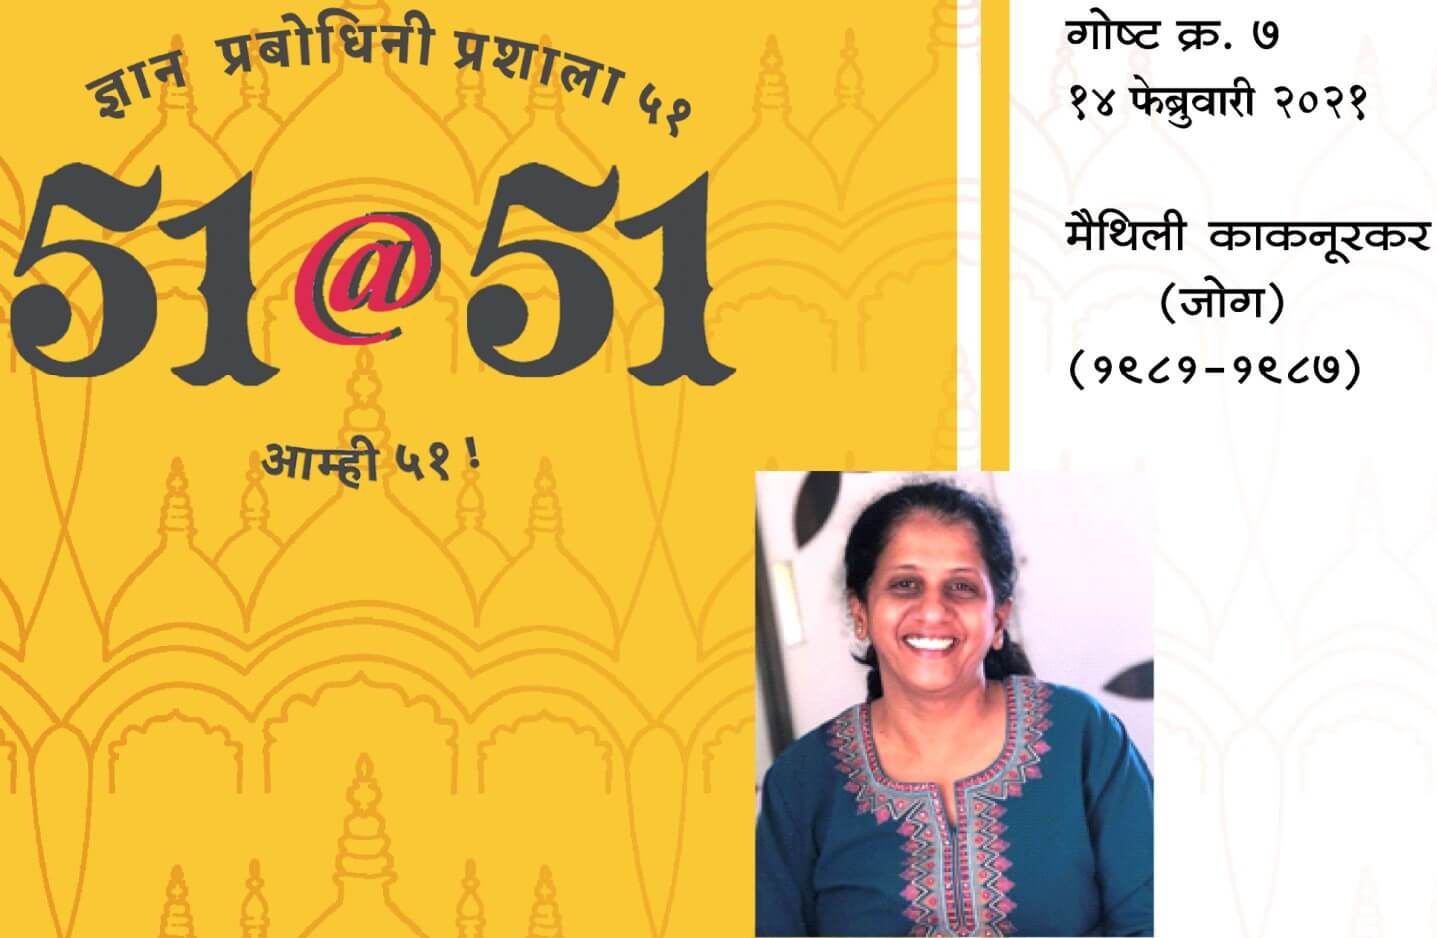 51@51 Maithili Kaknurkar (Jog)